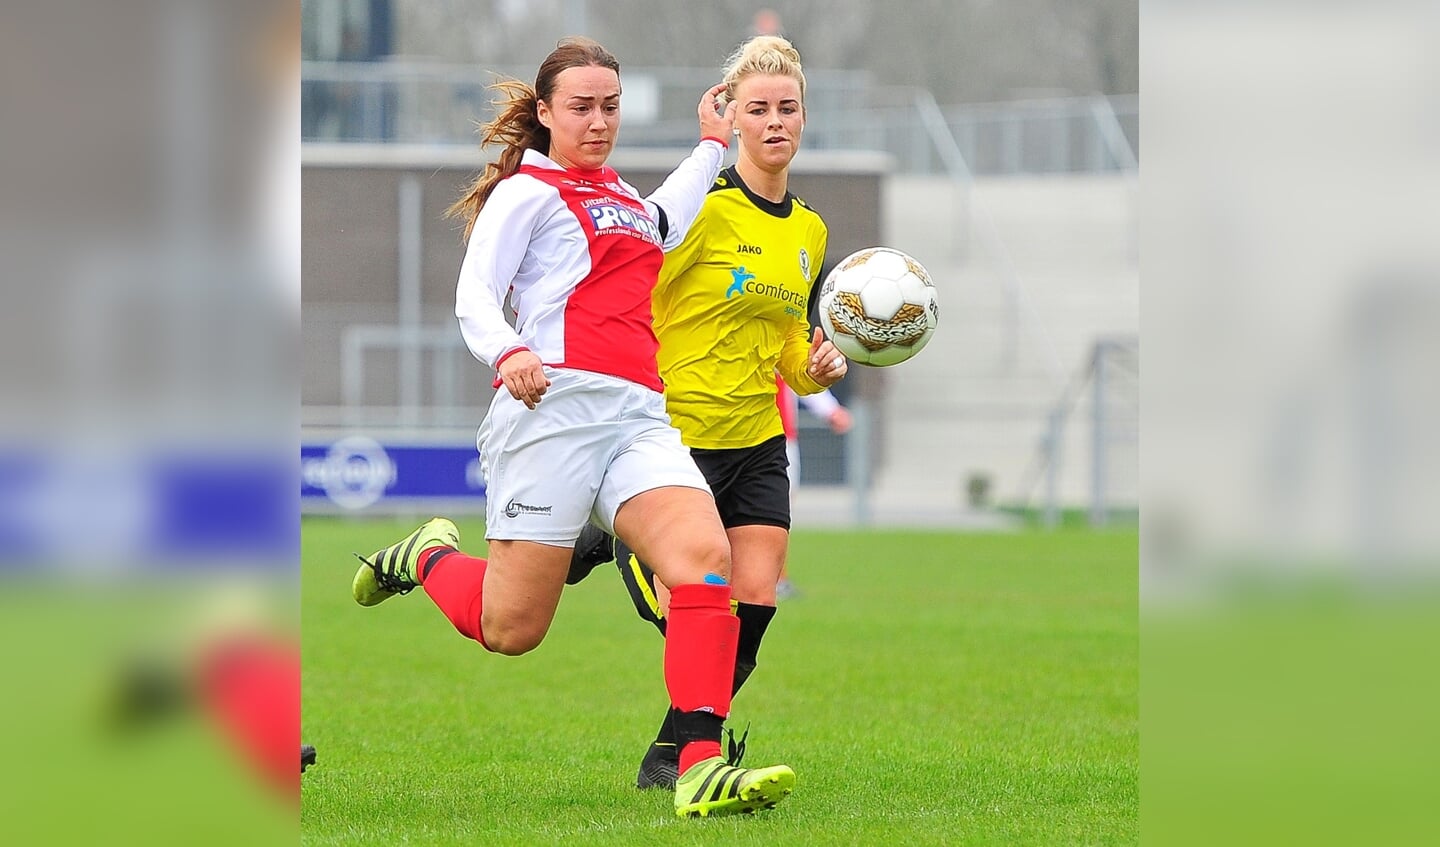  Yara Haasnoot van RCL is Britt van der Gulik voorbij en scoort de 1-0 voor RCL.